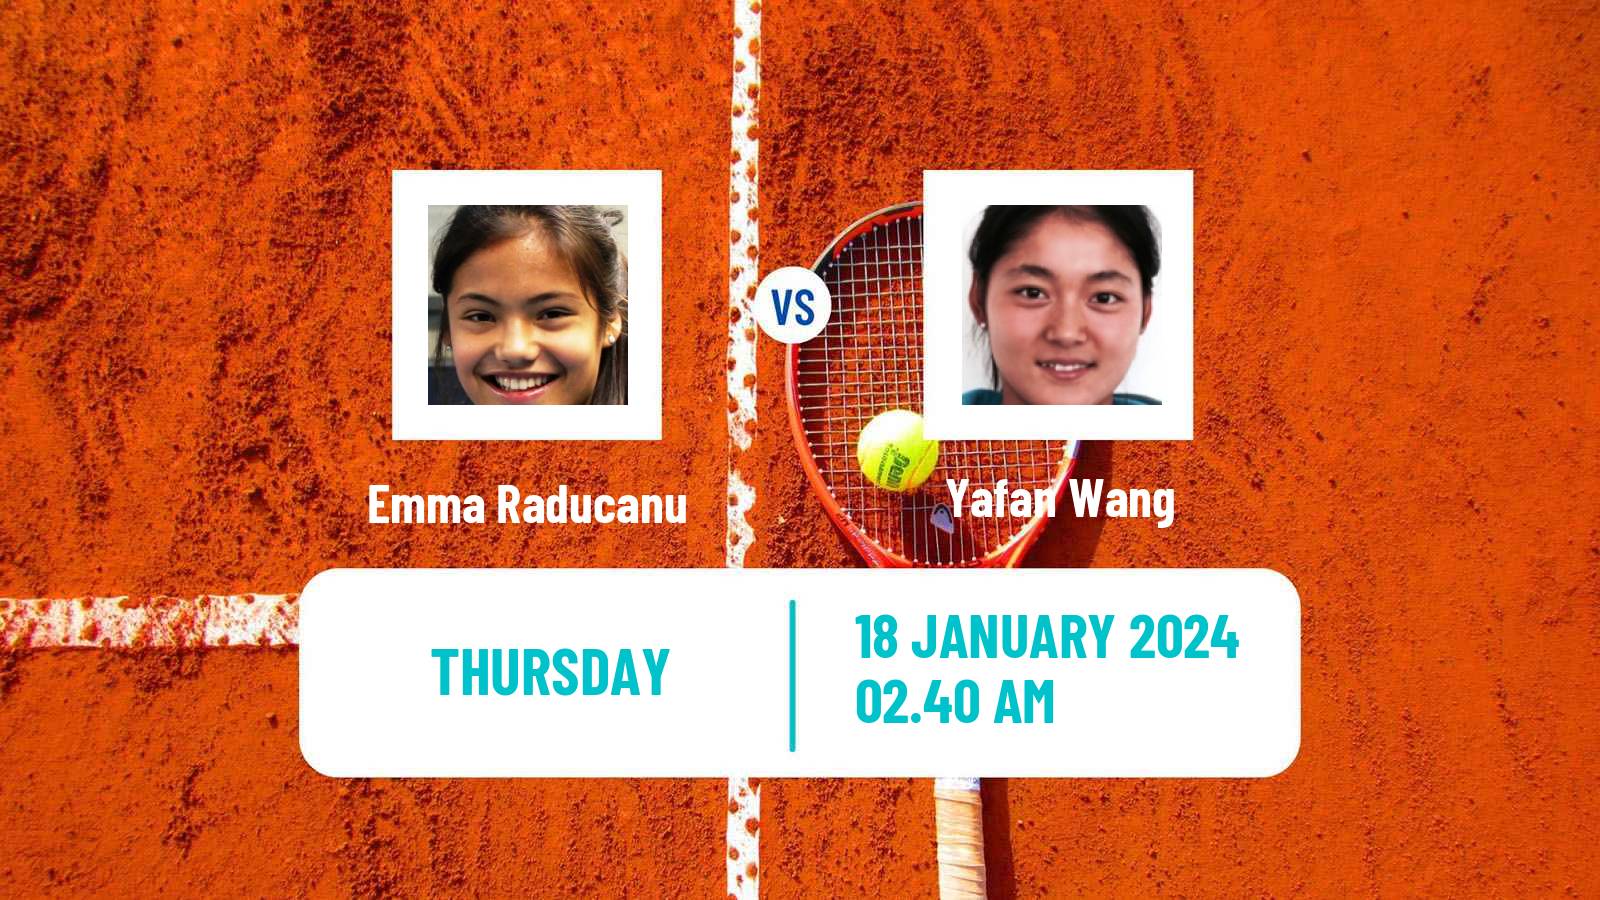 Tennis WTA Australian Open Emma Raducanu - Yafan Wang